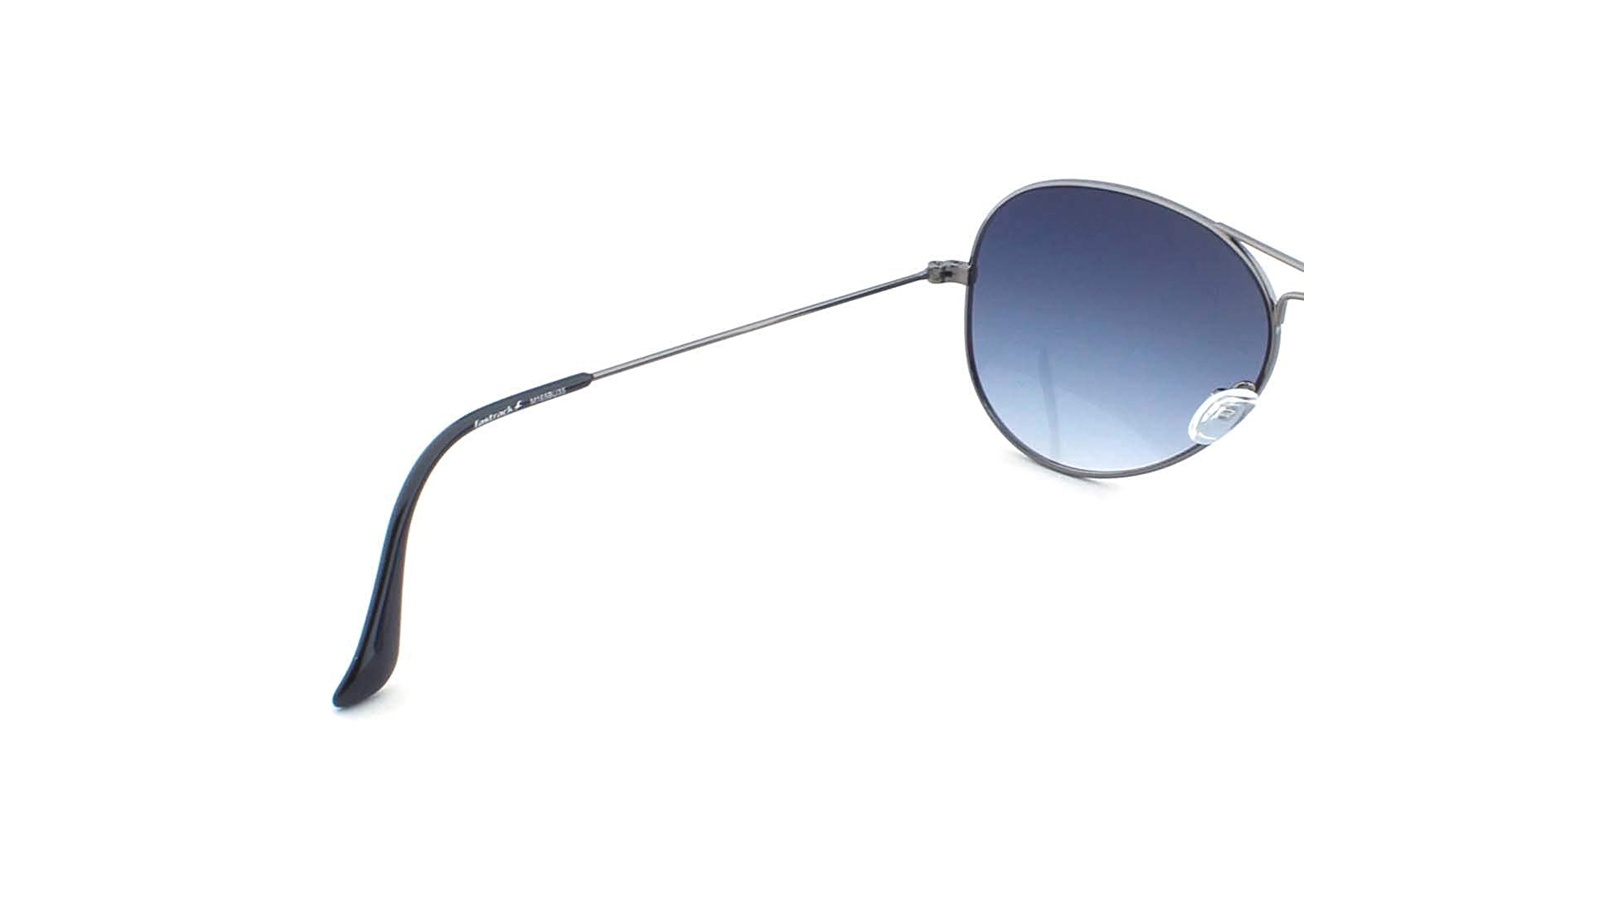 Pilot Sunglasses - Buy Aviator Frame Sunglasses Online - Fastrack